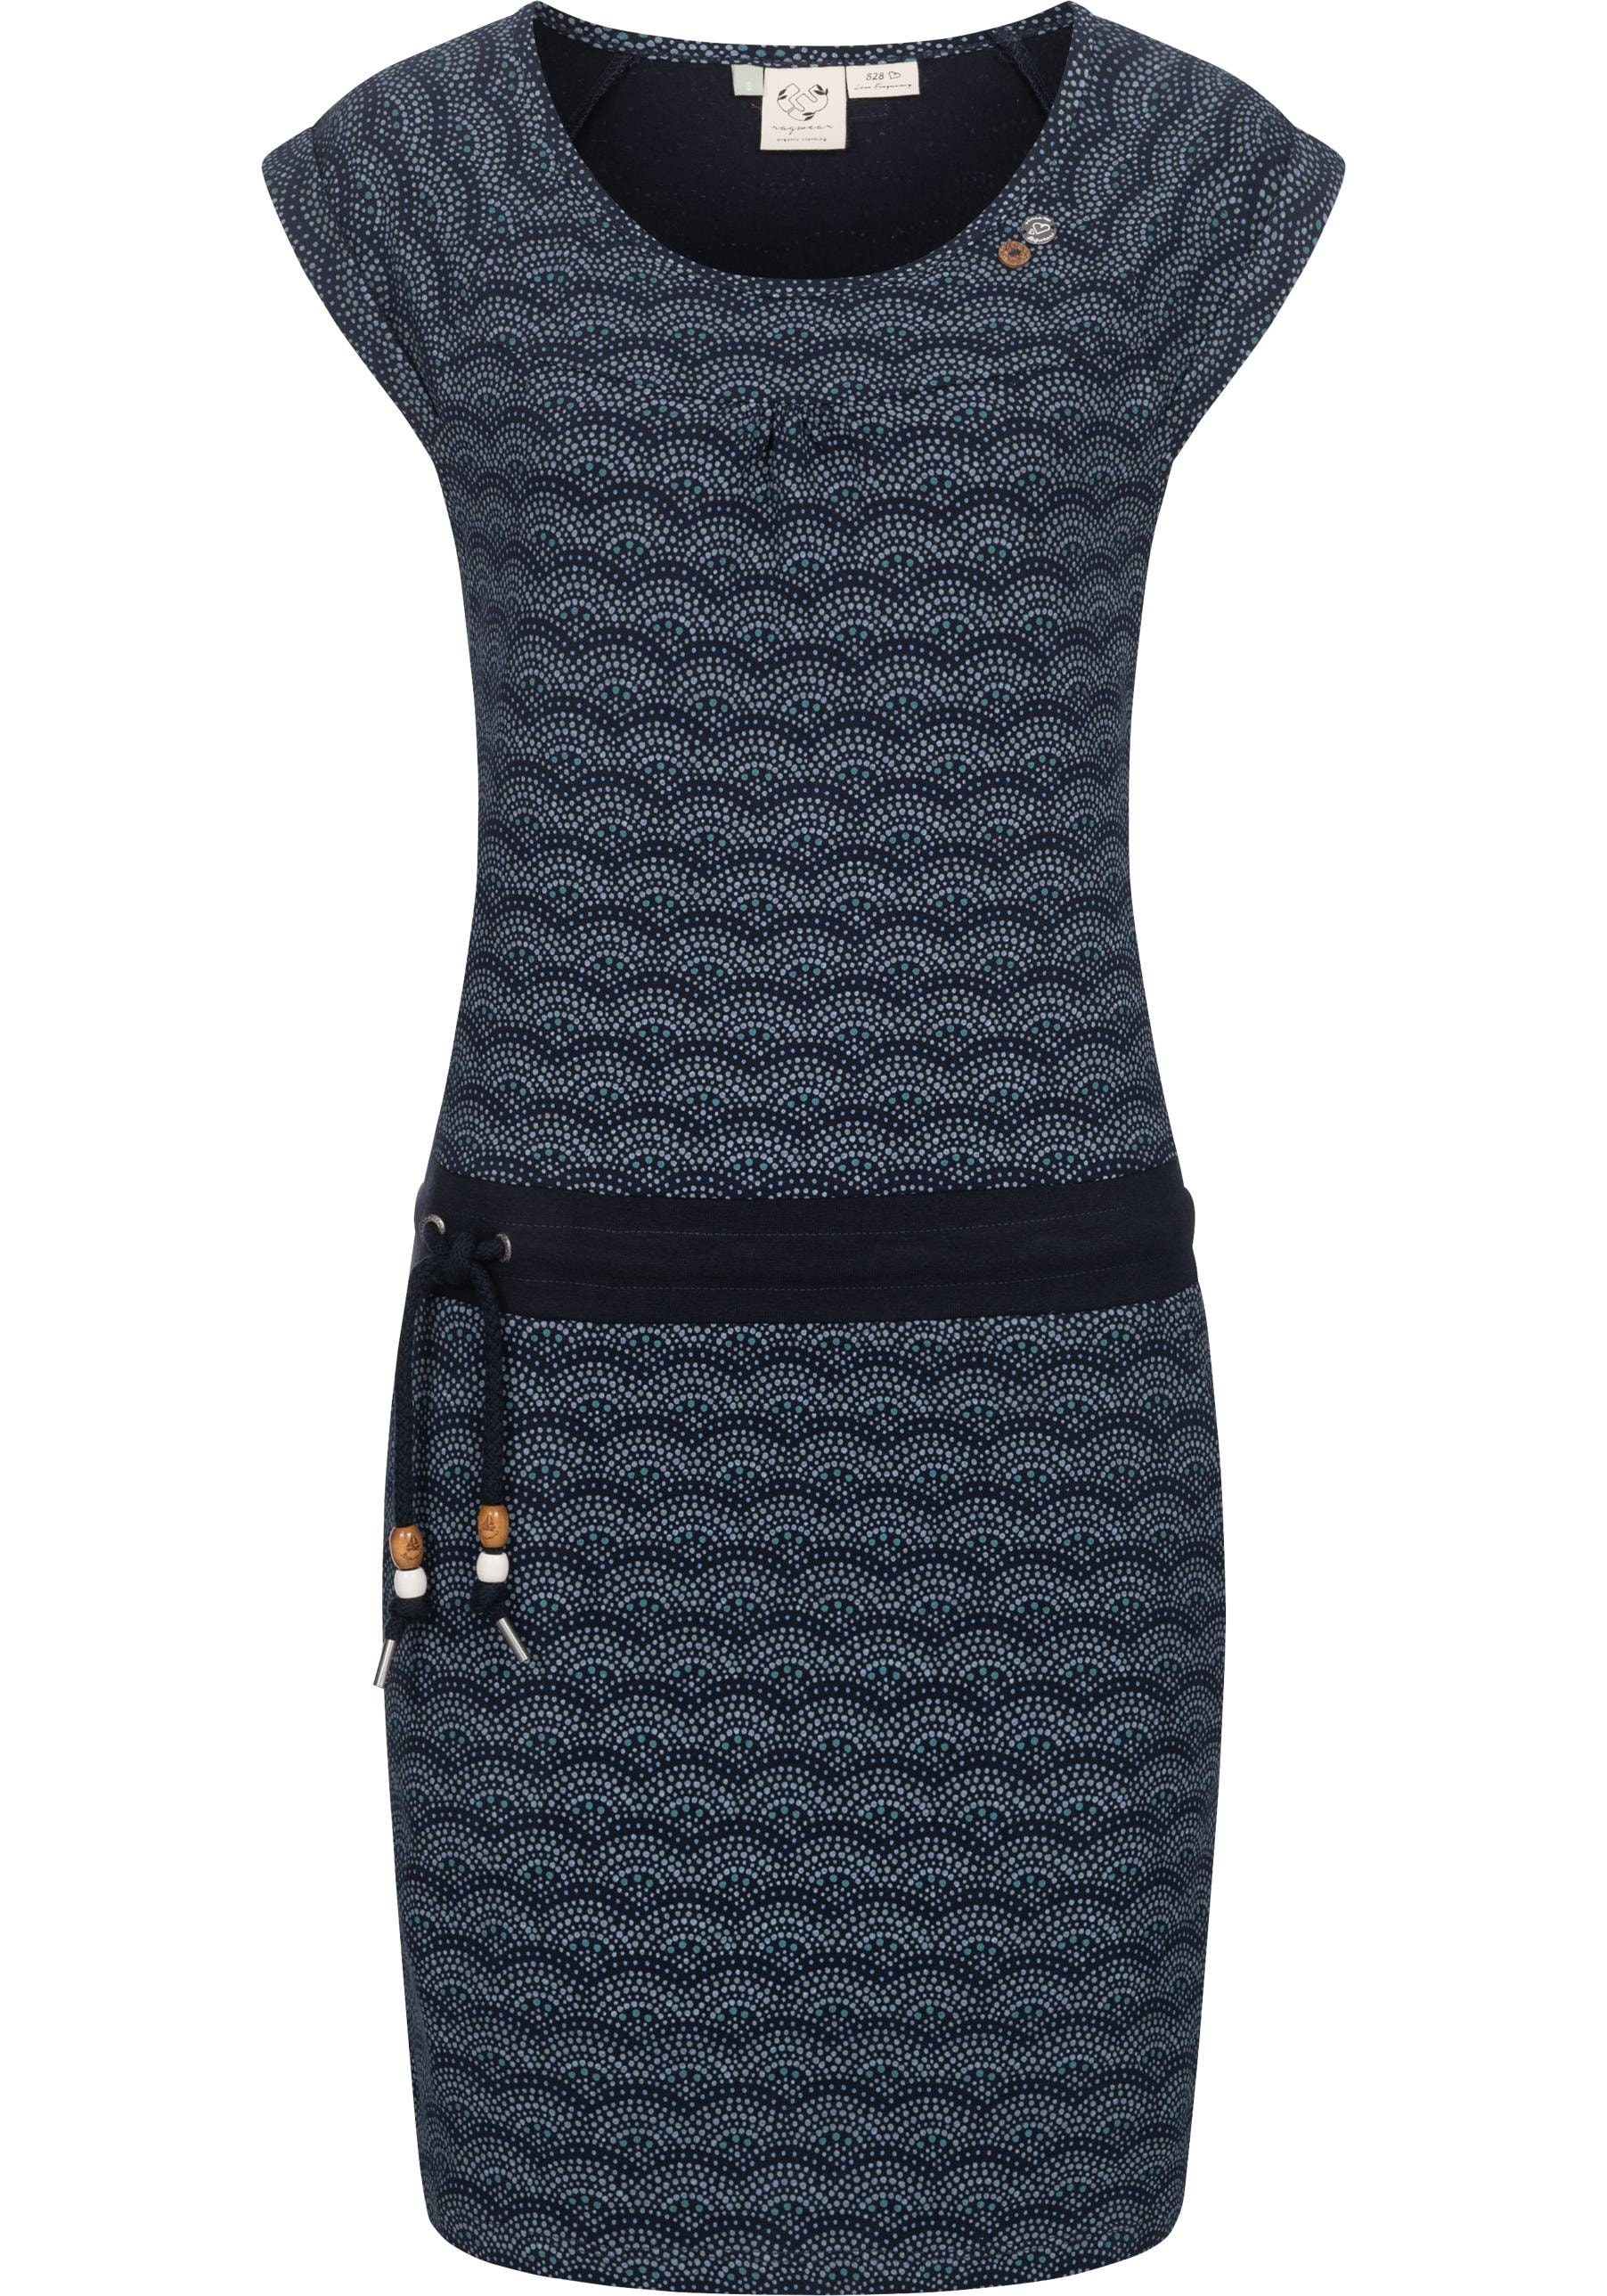 Sommerkleid »Penelope Print C Intl.«, leichtes Strand-Kleid mit stylischem Print